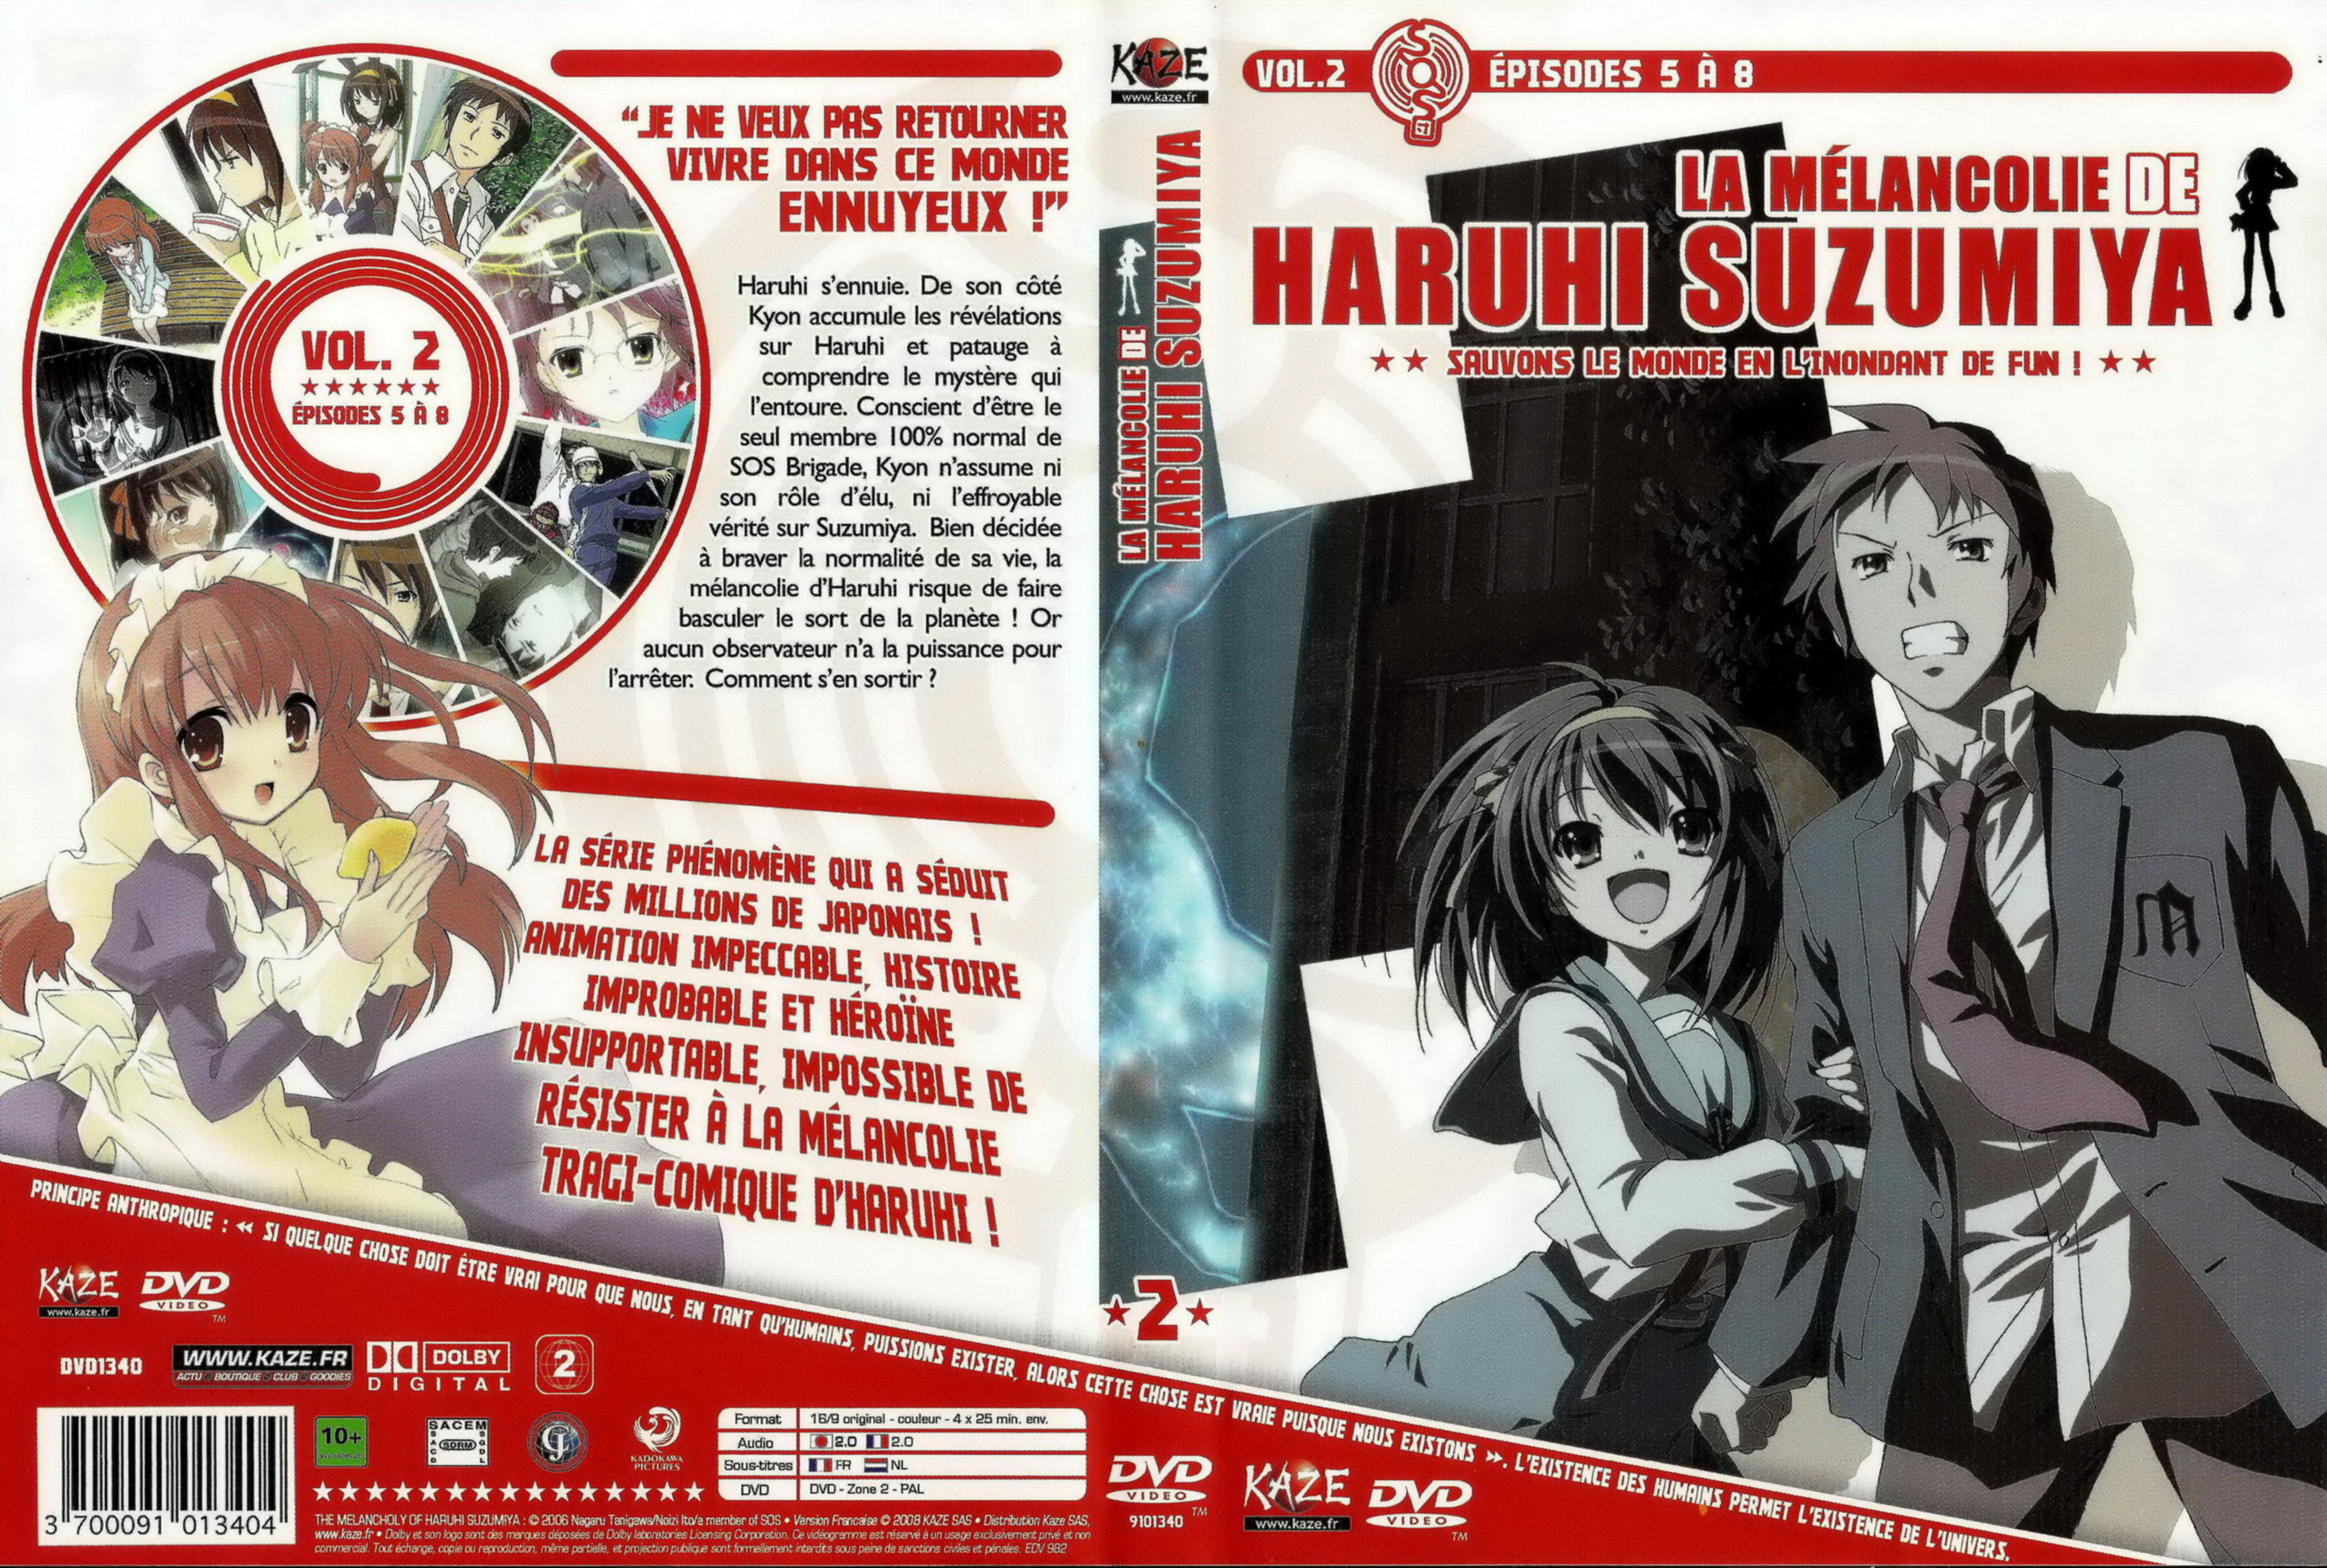 Jaquette DVD La melancolie de Suzumiya Haruhi vol 02